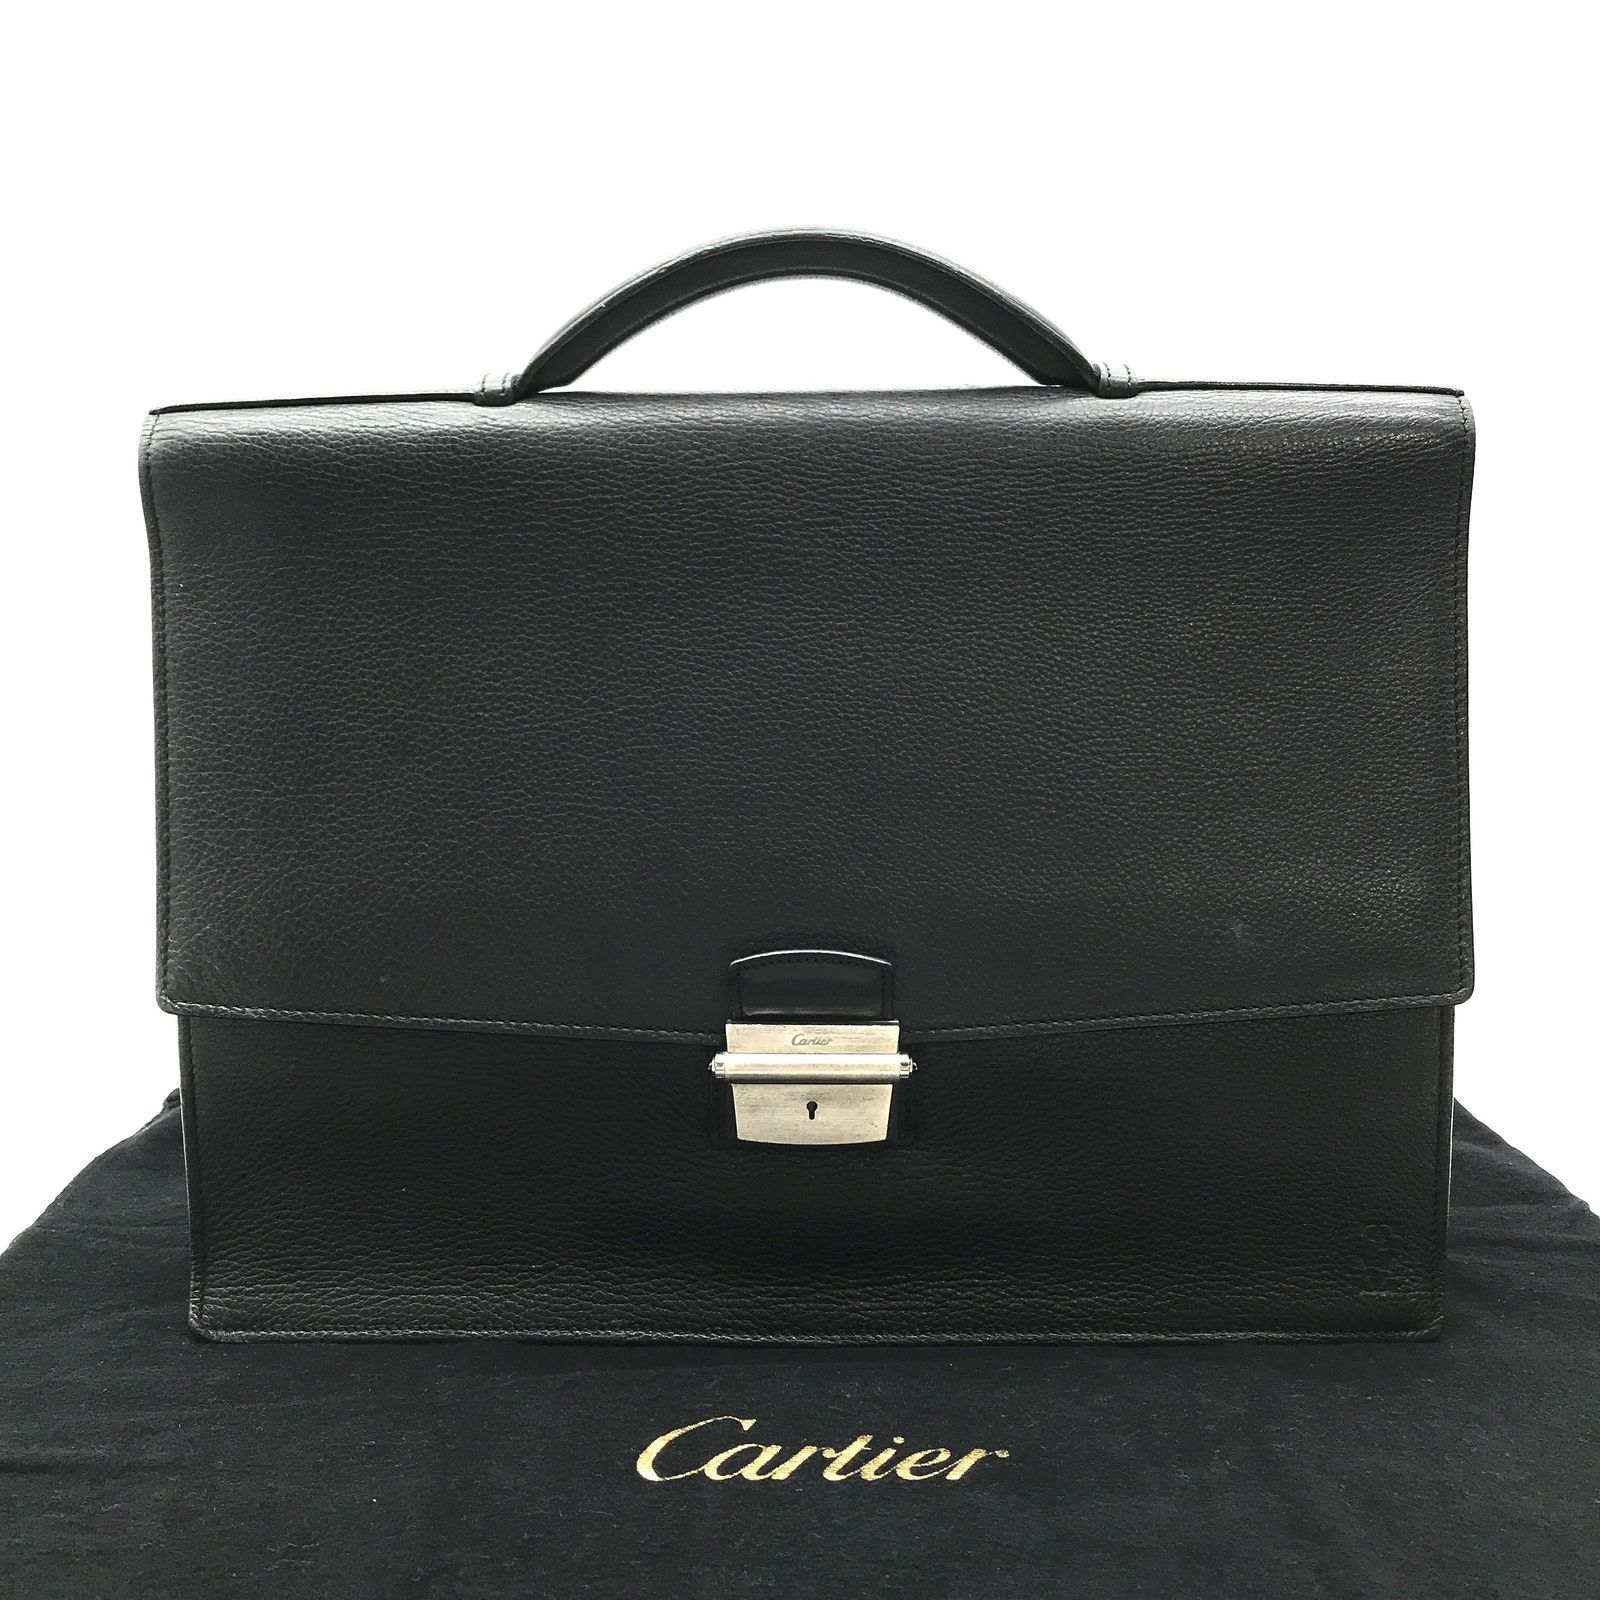 Cartier カルティエ レザー ビジネス バッグ メンズ ブリーフケース ...